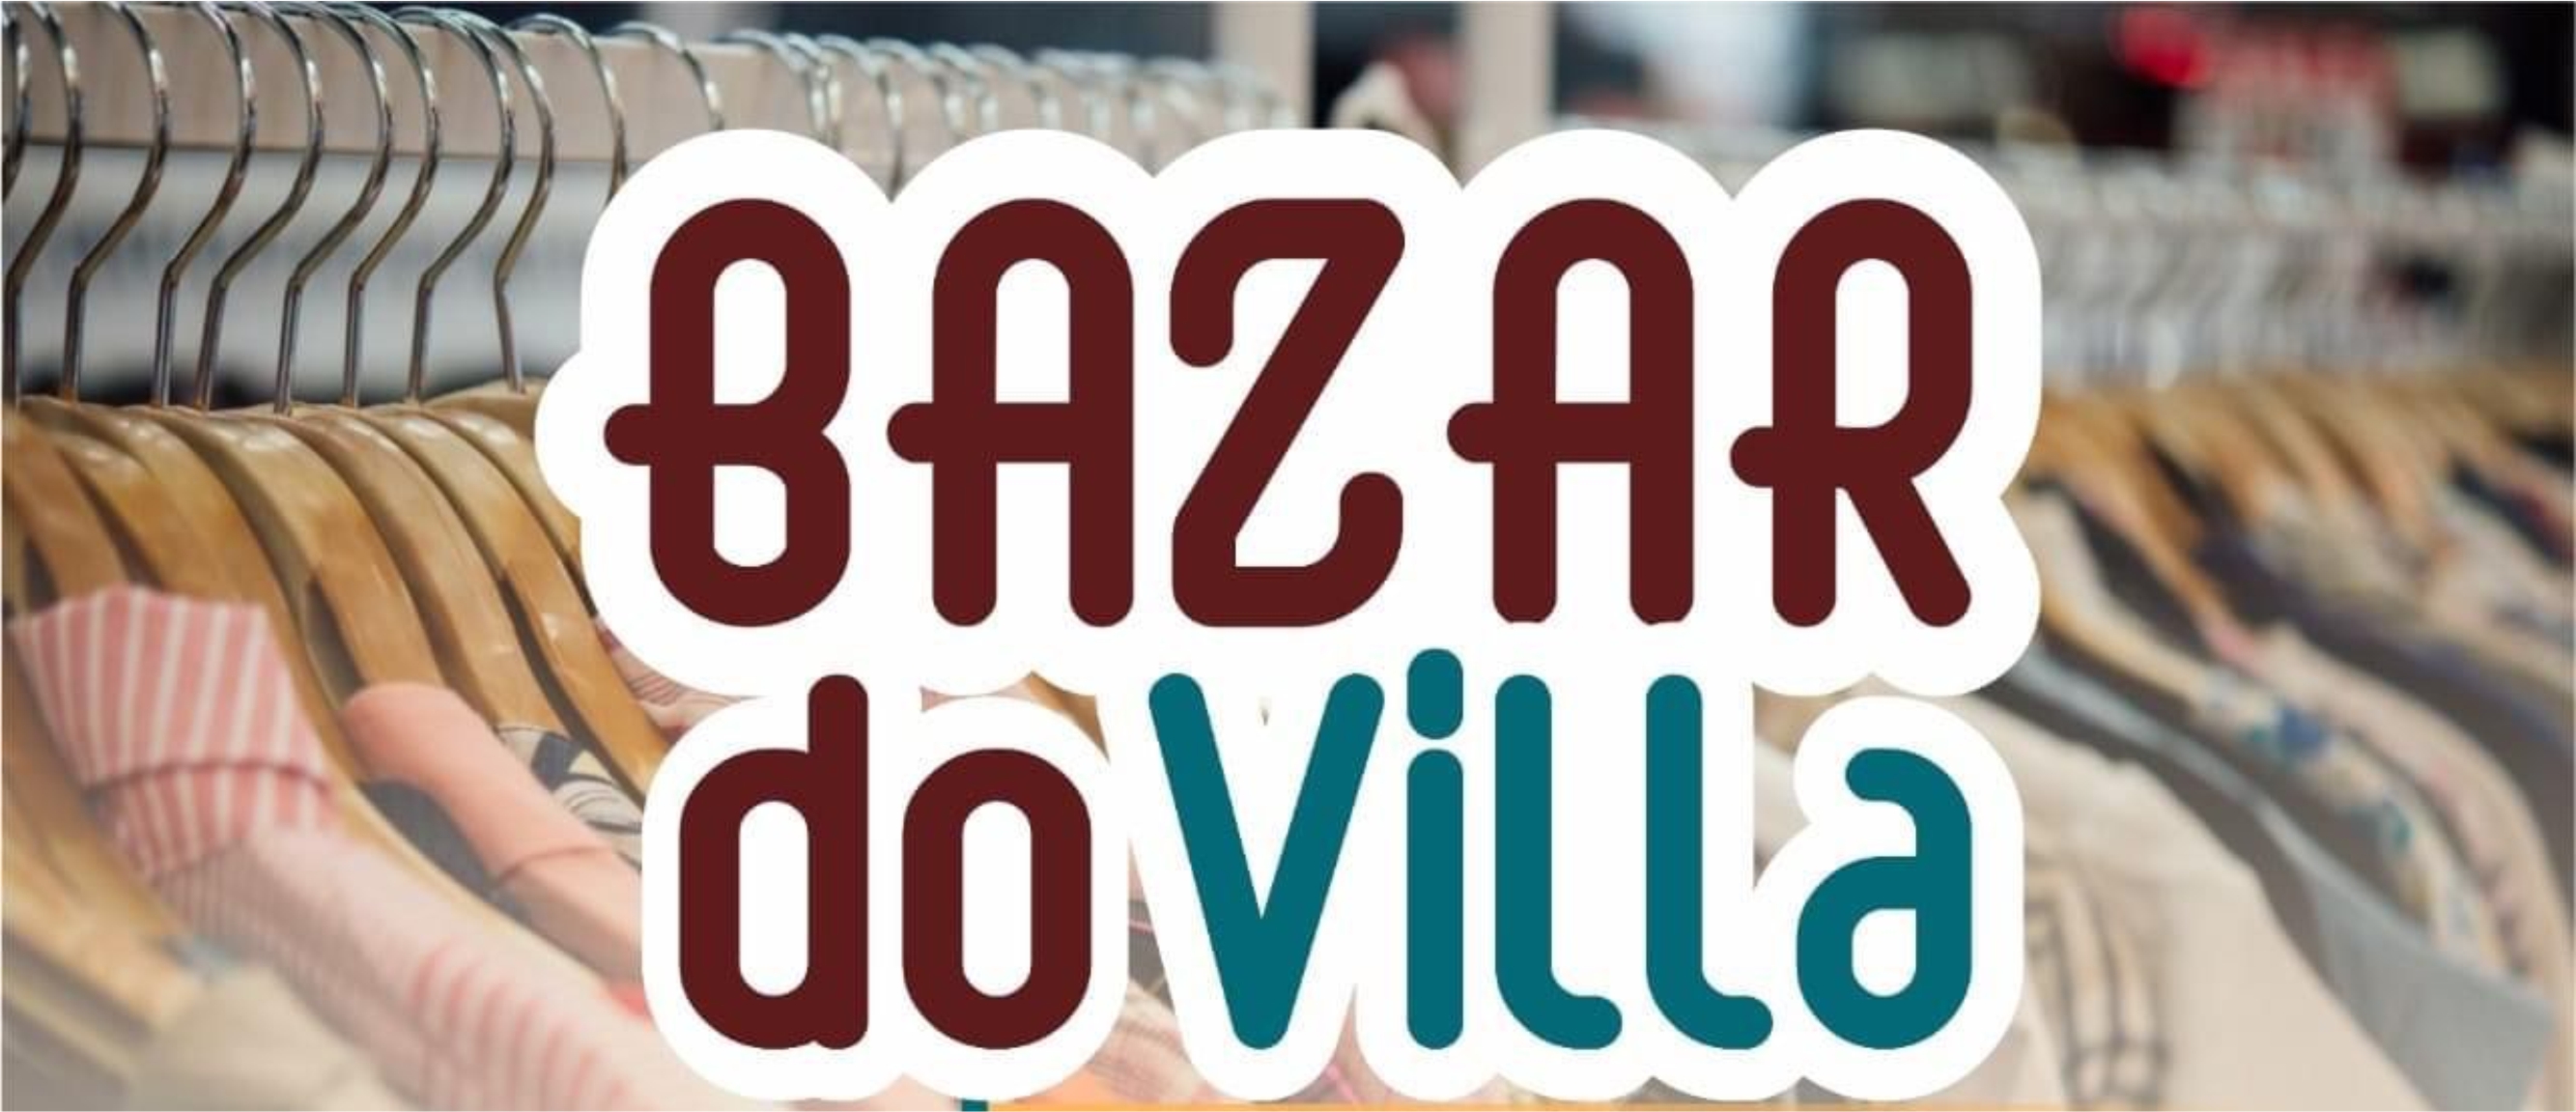 🎵 O Villa-Musical promove neste sábado (03), das 8h às 12h, o ‘Bazar do Villa’.